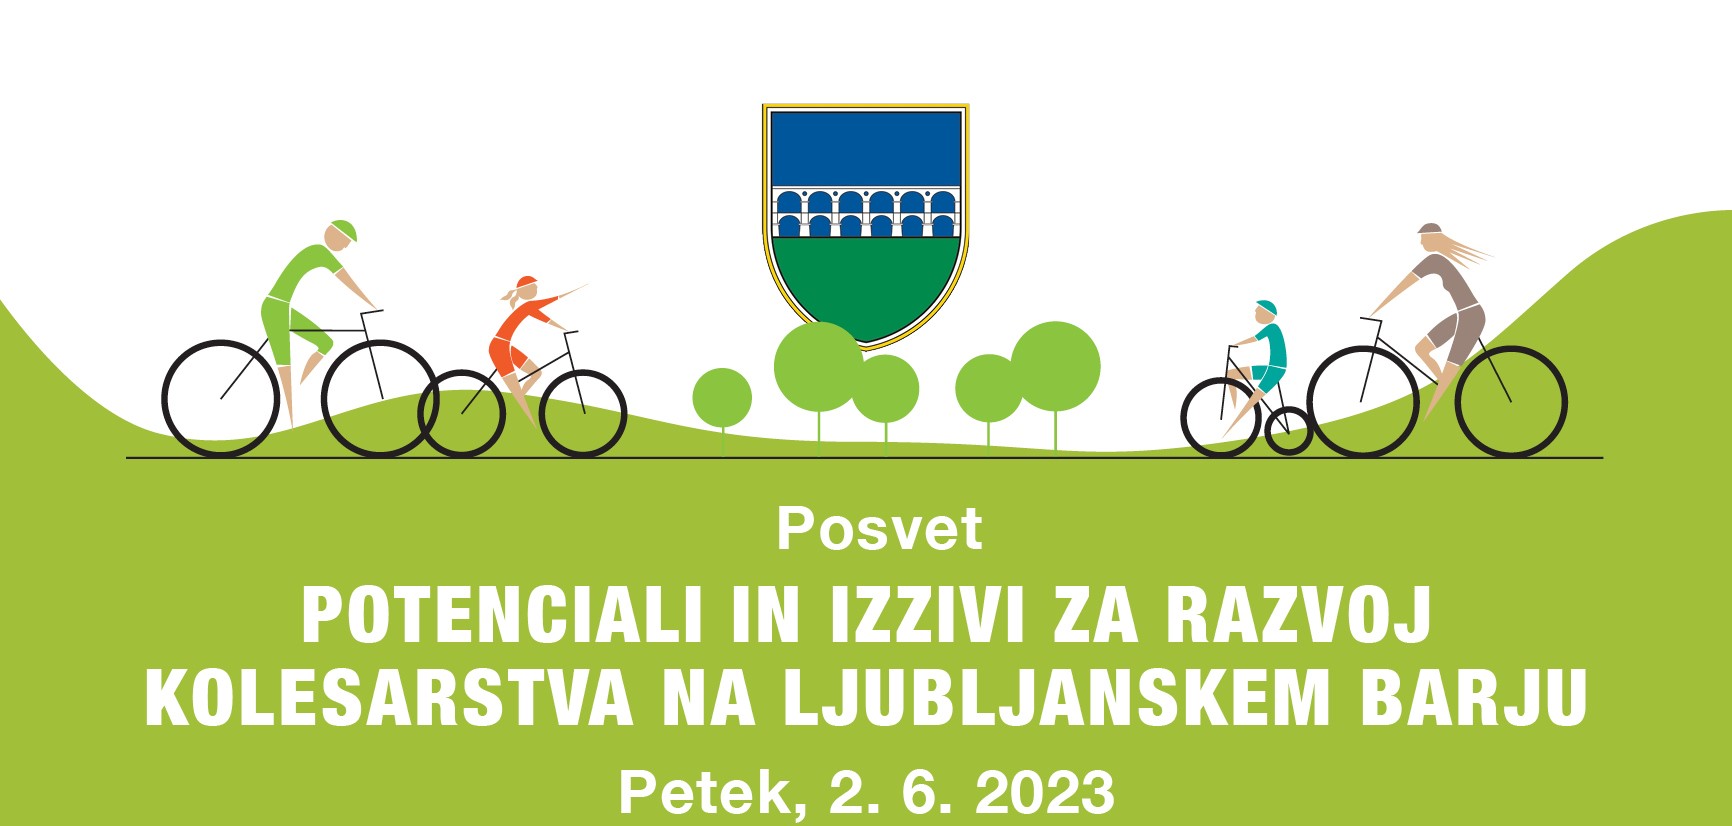 Potenciali in izzivi kolesarstva na Ljubljanskem barju